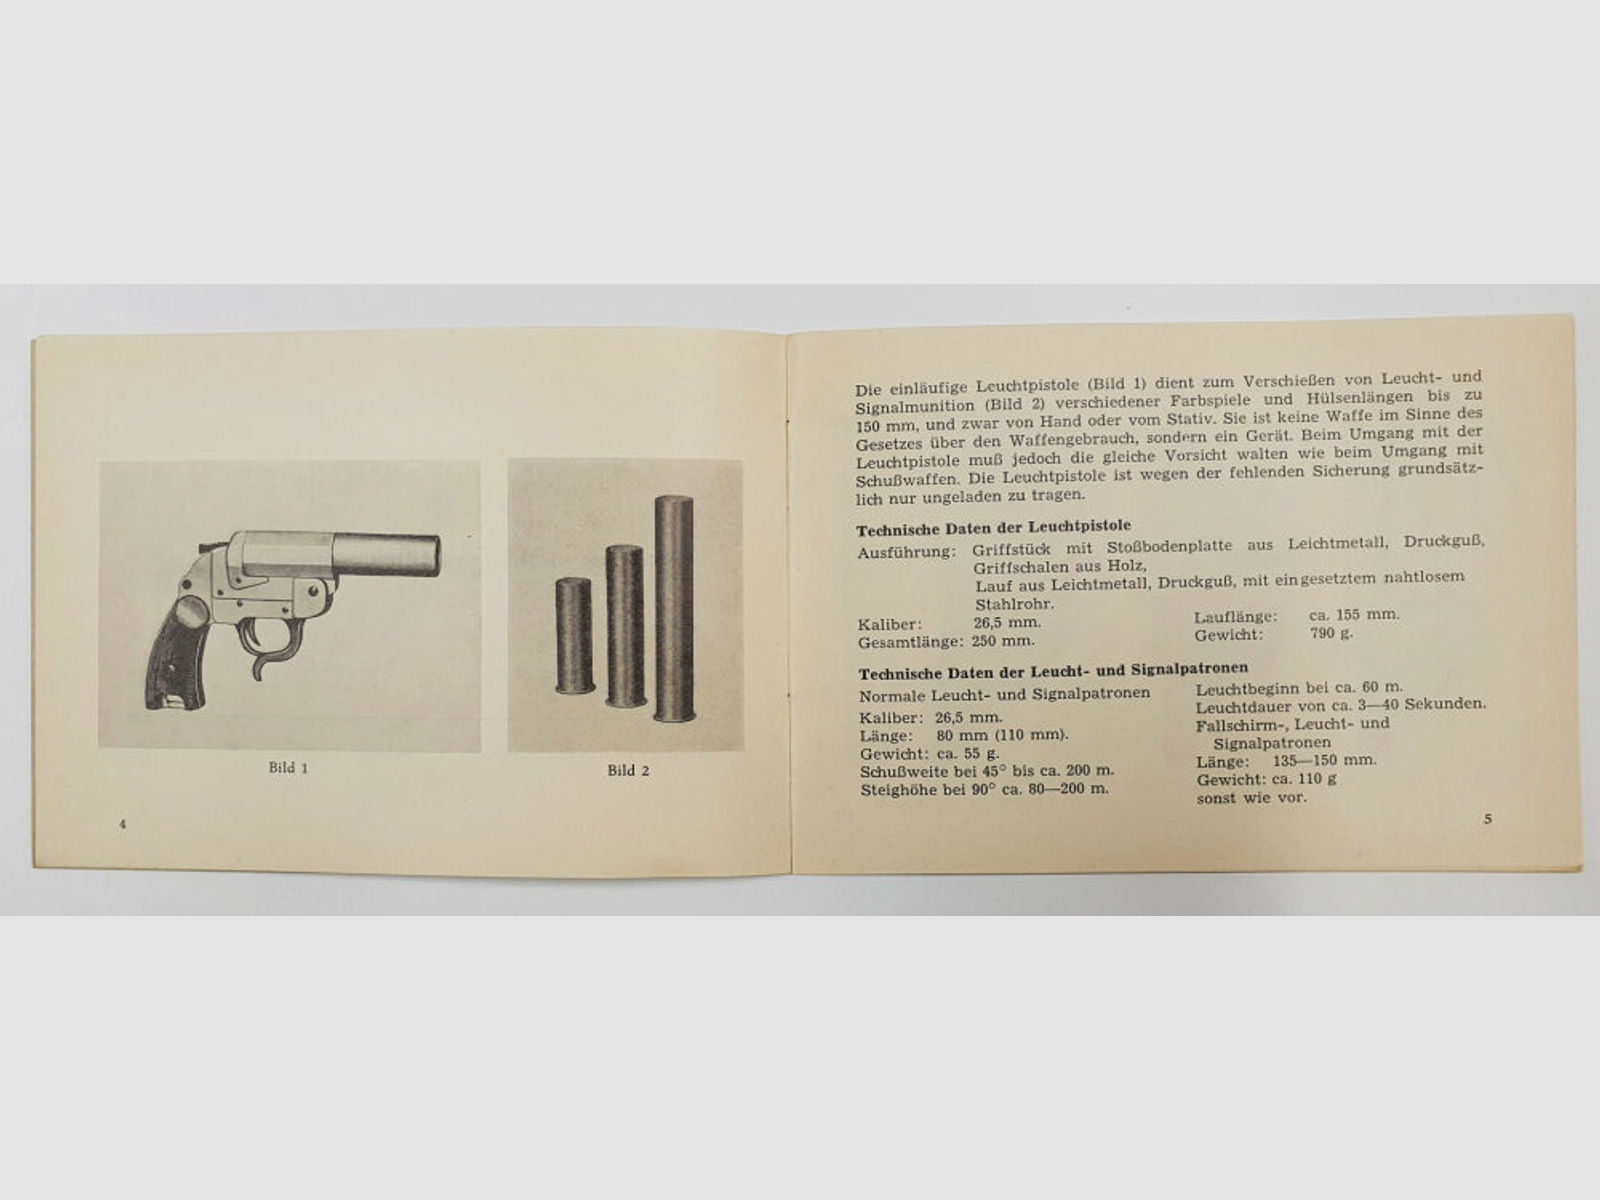 Heym	 Bedienungsnanweisung Leuchtpistole Heym, Zoll Typ 3 Waffenfabrik F. W. Heym - Münnerstadt , von 1959